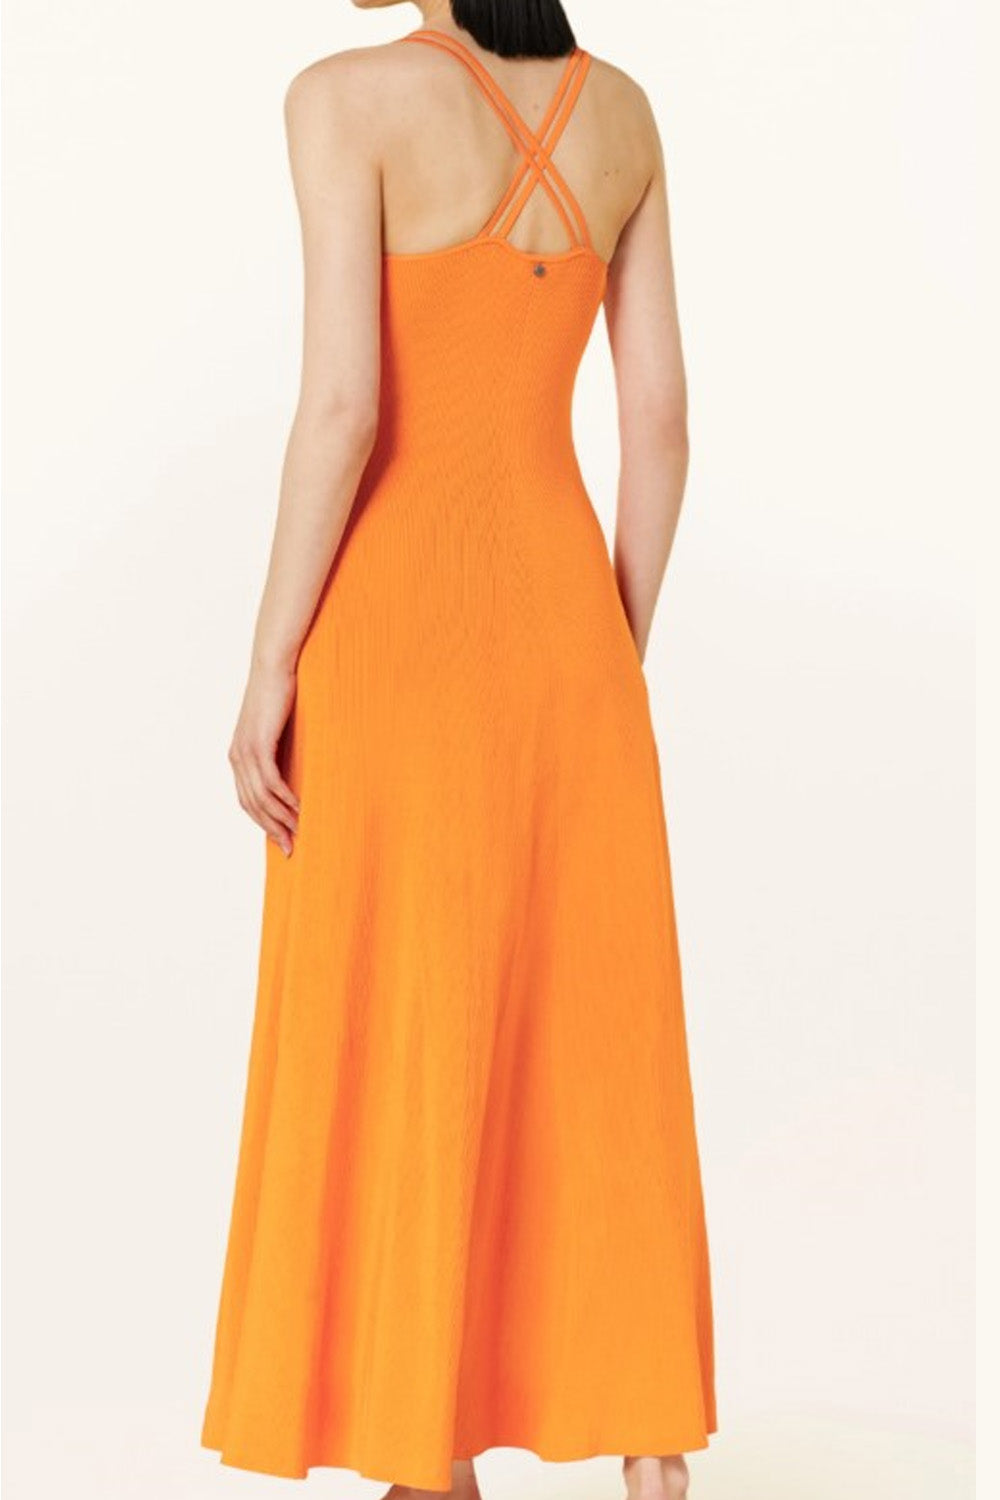 Ecosphere Orange Dress